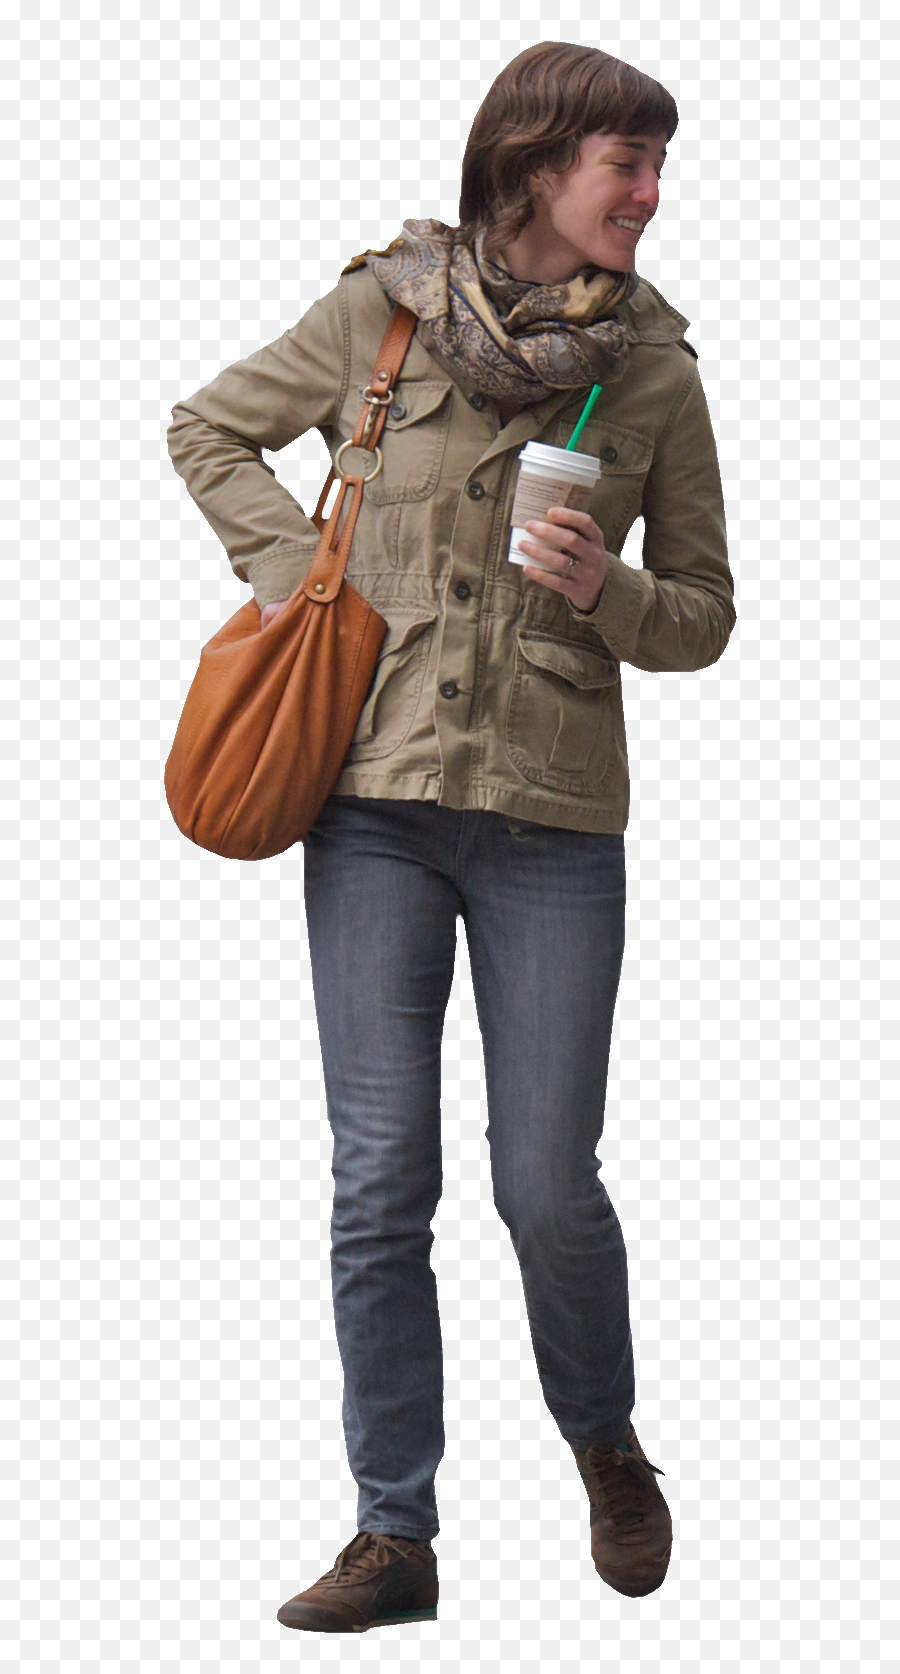 People Walking Png - Man In Suit Walking Woman With Coffee Straight Leg Emoji,People Walking Png